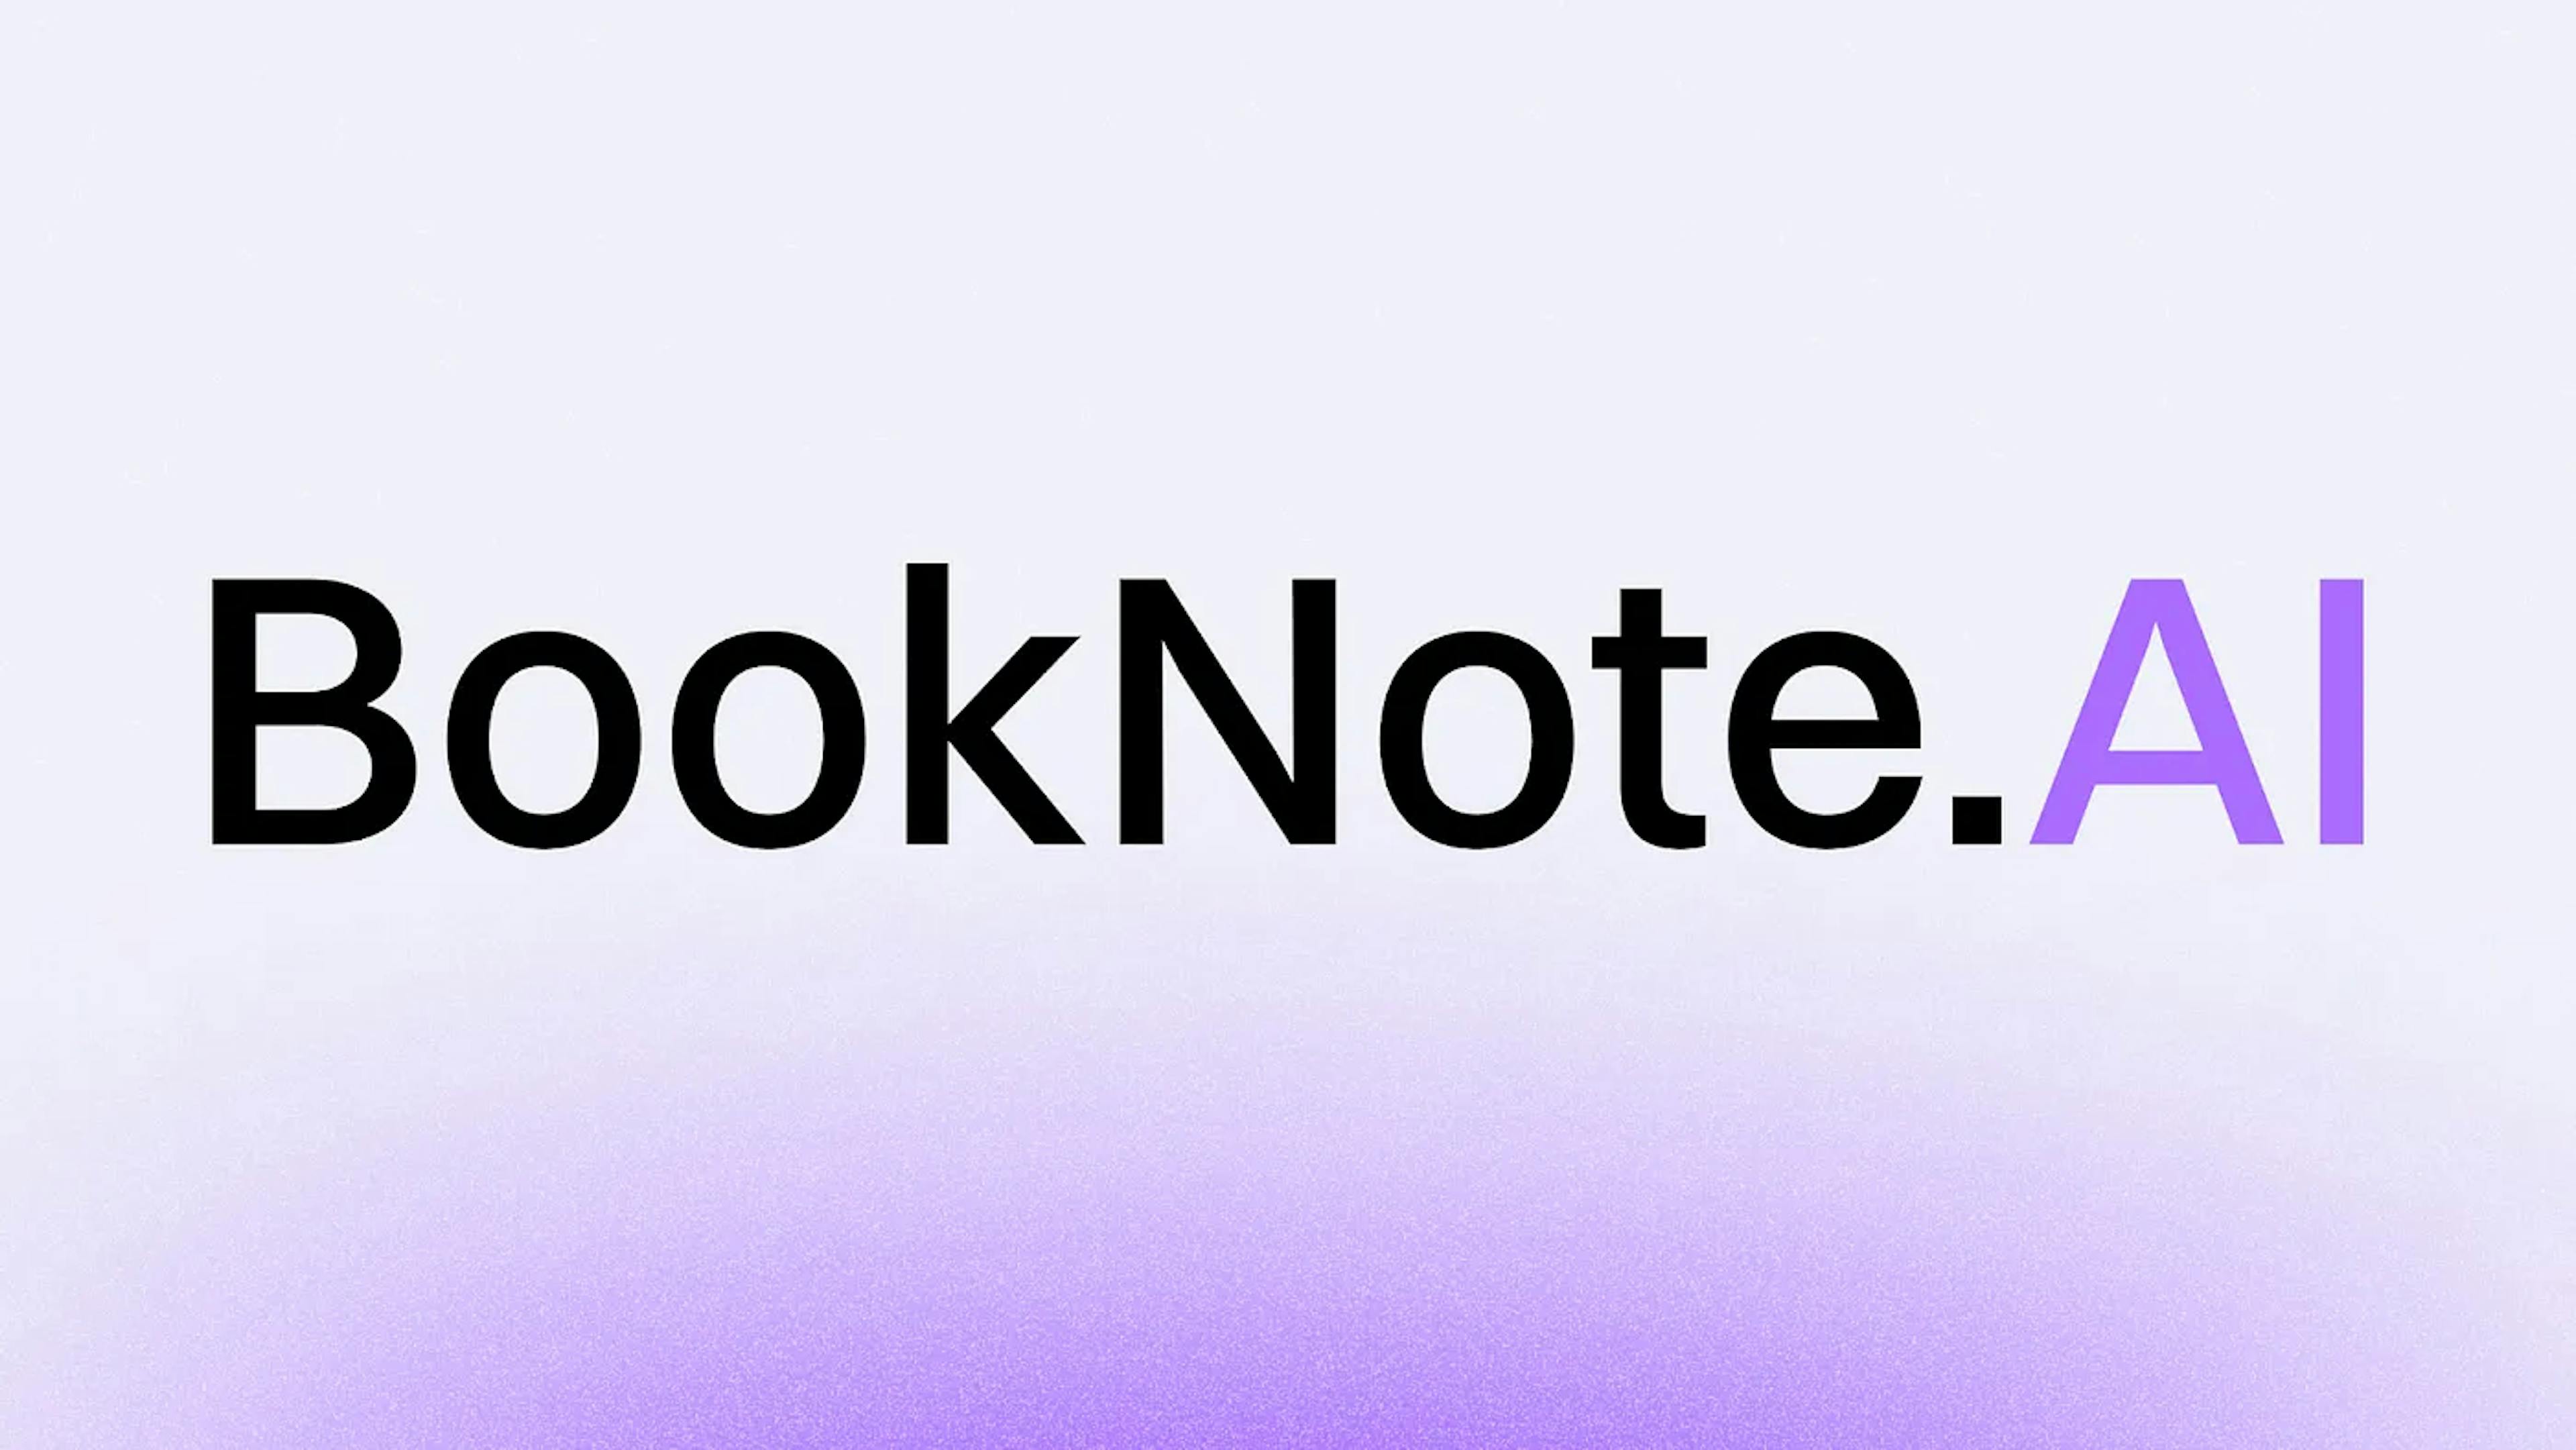 featured image - Chuyển đổi trải nghiệm đọc với BookNote.AI của WebLab Technology